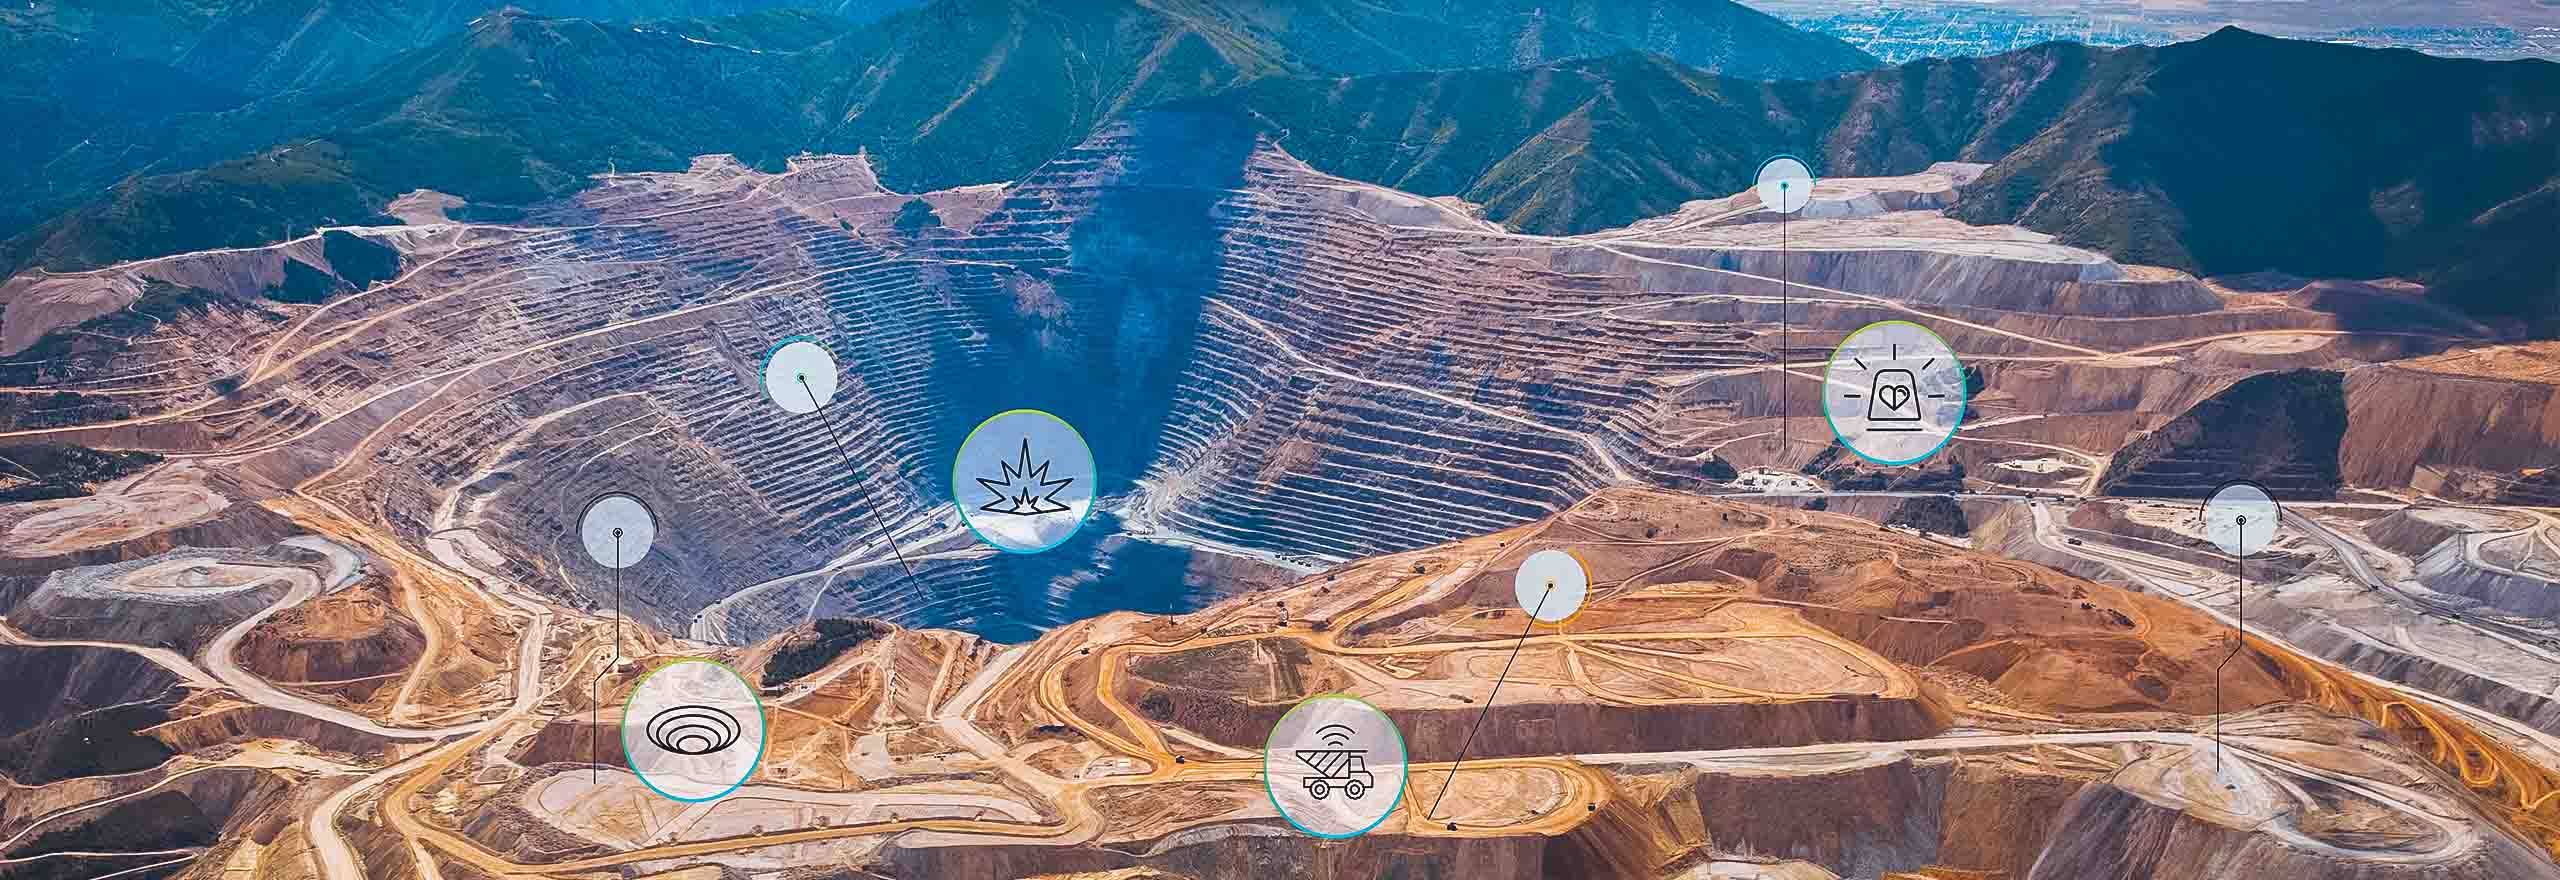 vista aerea di una miniera a cielo aperto con sovrapposizioni di tecnologie 